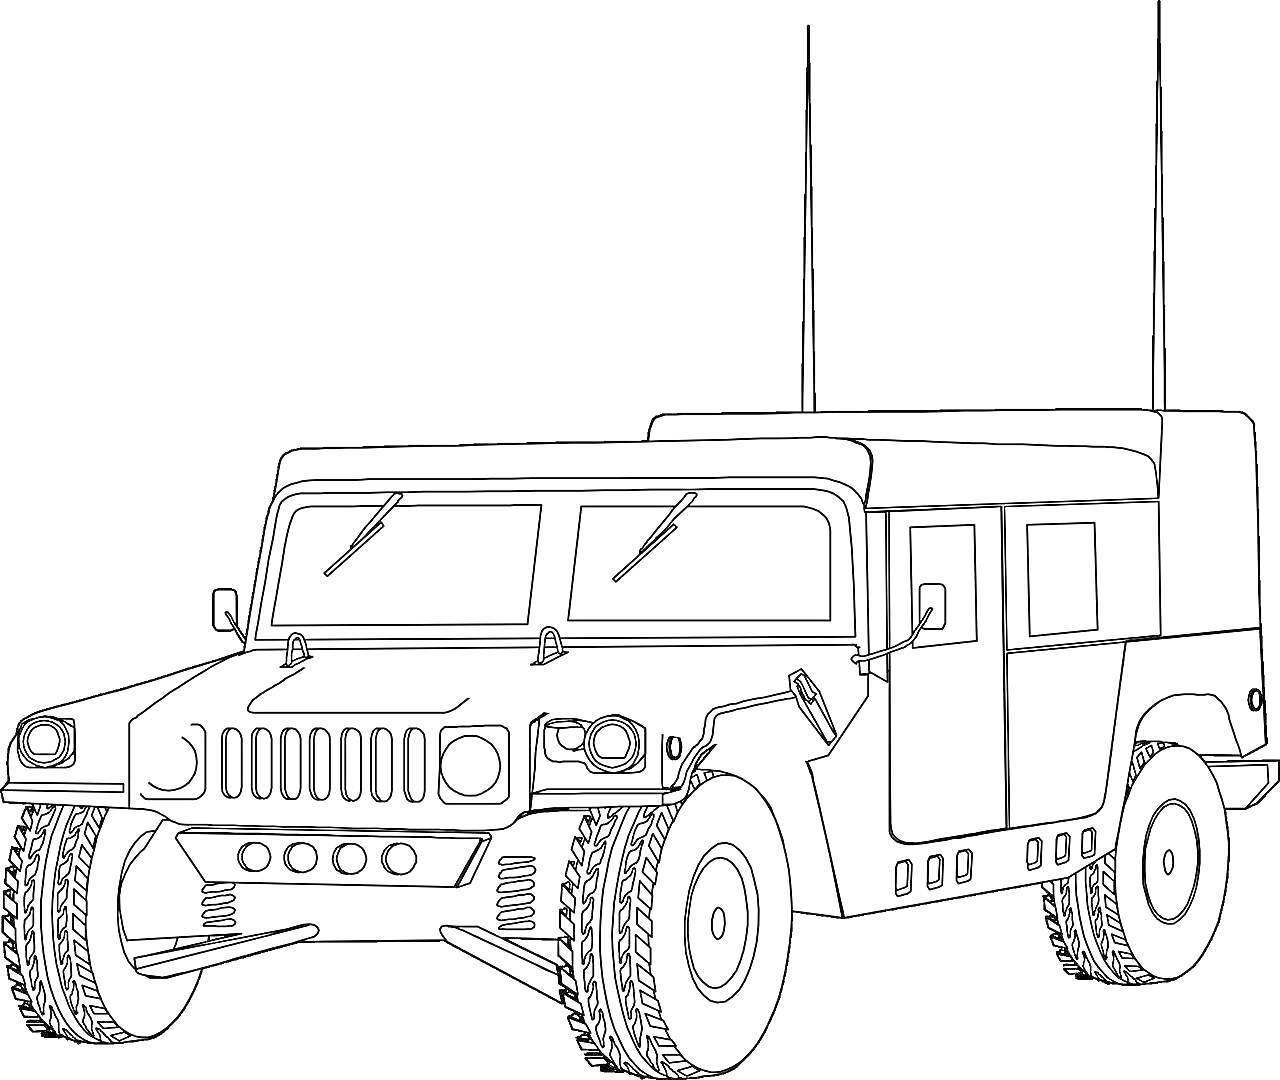 Раскраска Военный Хаммер с антеннами, детально прорисованный (вид спереди-сбоку)